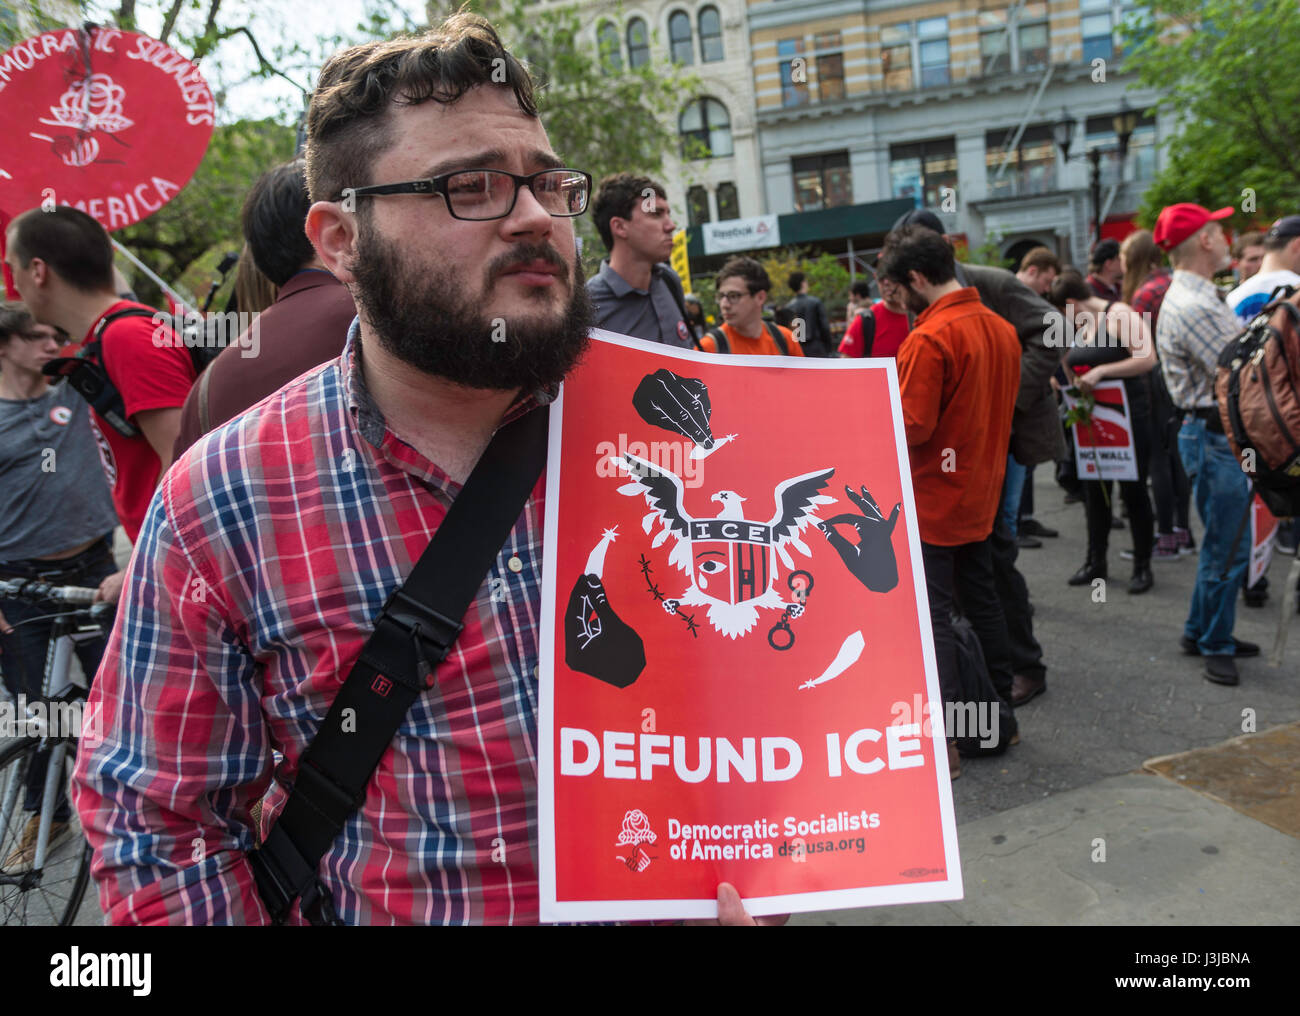 New York, NY 1 mai 2017 - manifestant avec un signe à defund ICE (Immigration and Customs Enforcement) socialistes démocratiques à un premier mai pour la Journée internationale des travailleurs dans l'Union Square Park. ©Stacy Walsh Rosenstock/Alamy Live News Banque D'Images